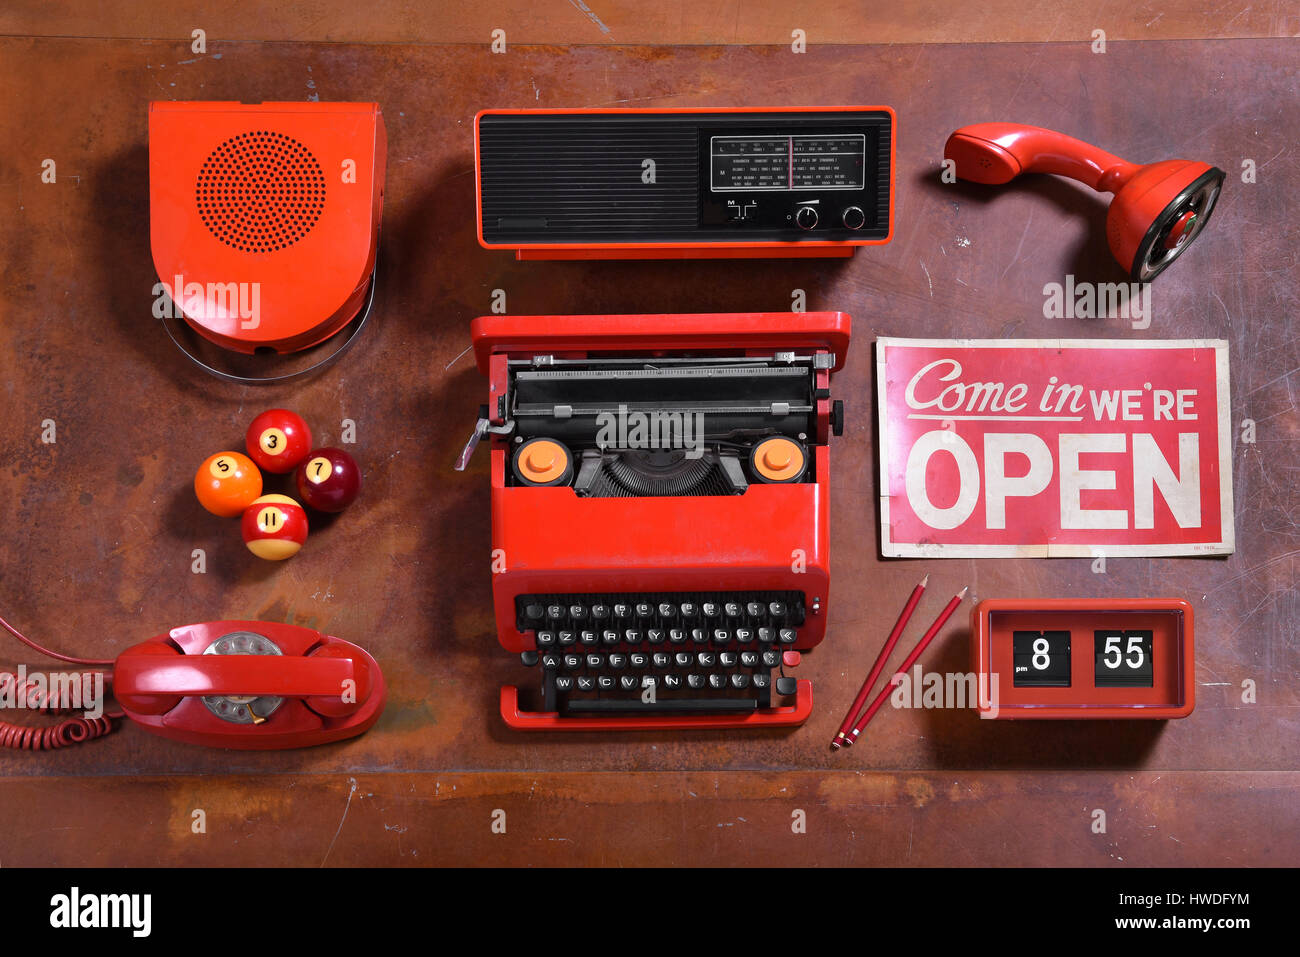 Ángulo alto todavía la vida de la colección de objetos de color rojo sobre el mostrador de madera - el altavoz, radio, máquina de escribir, signo abierto, reloj, lápices, teléfono, piscina de bolas y Mic Foto de stock